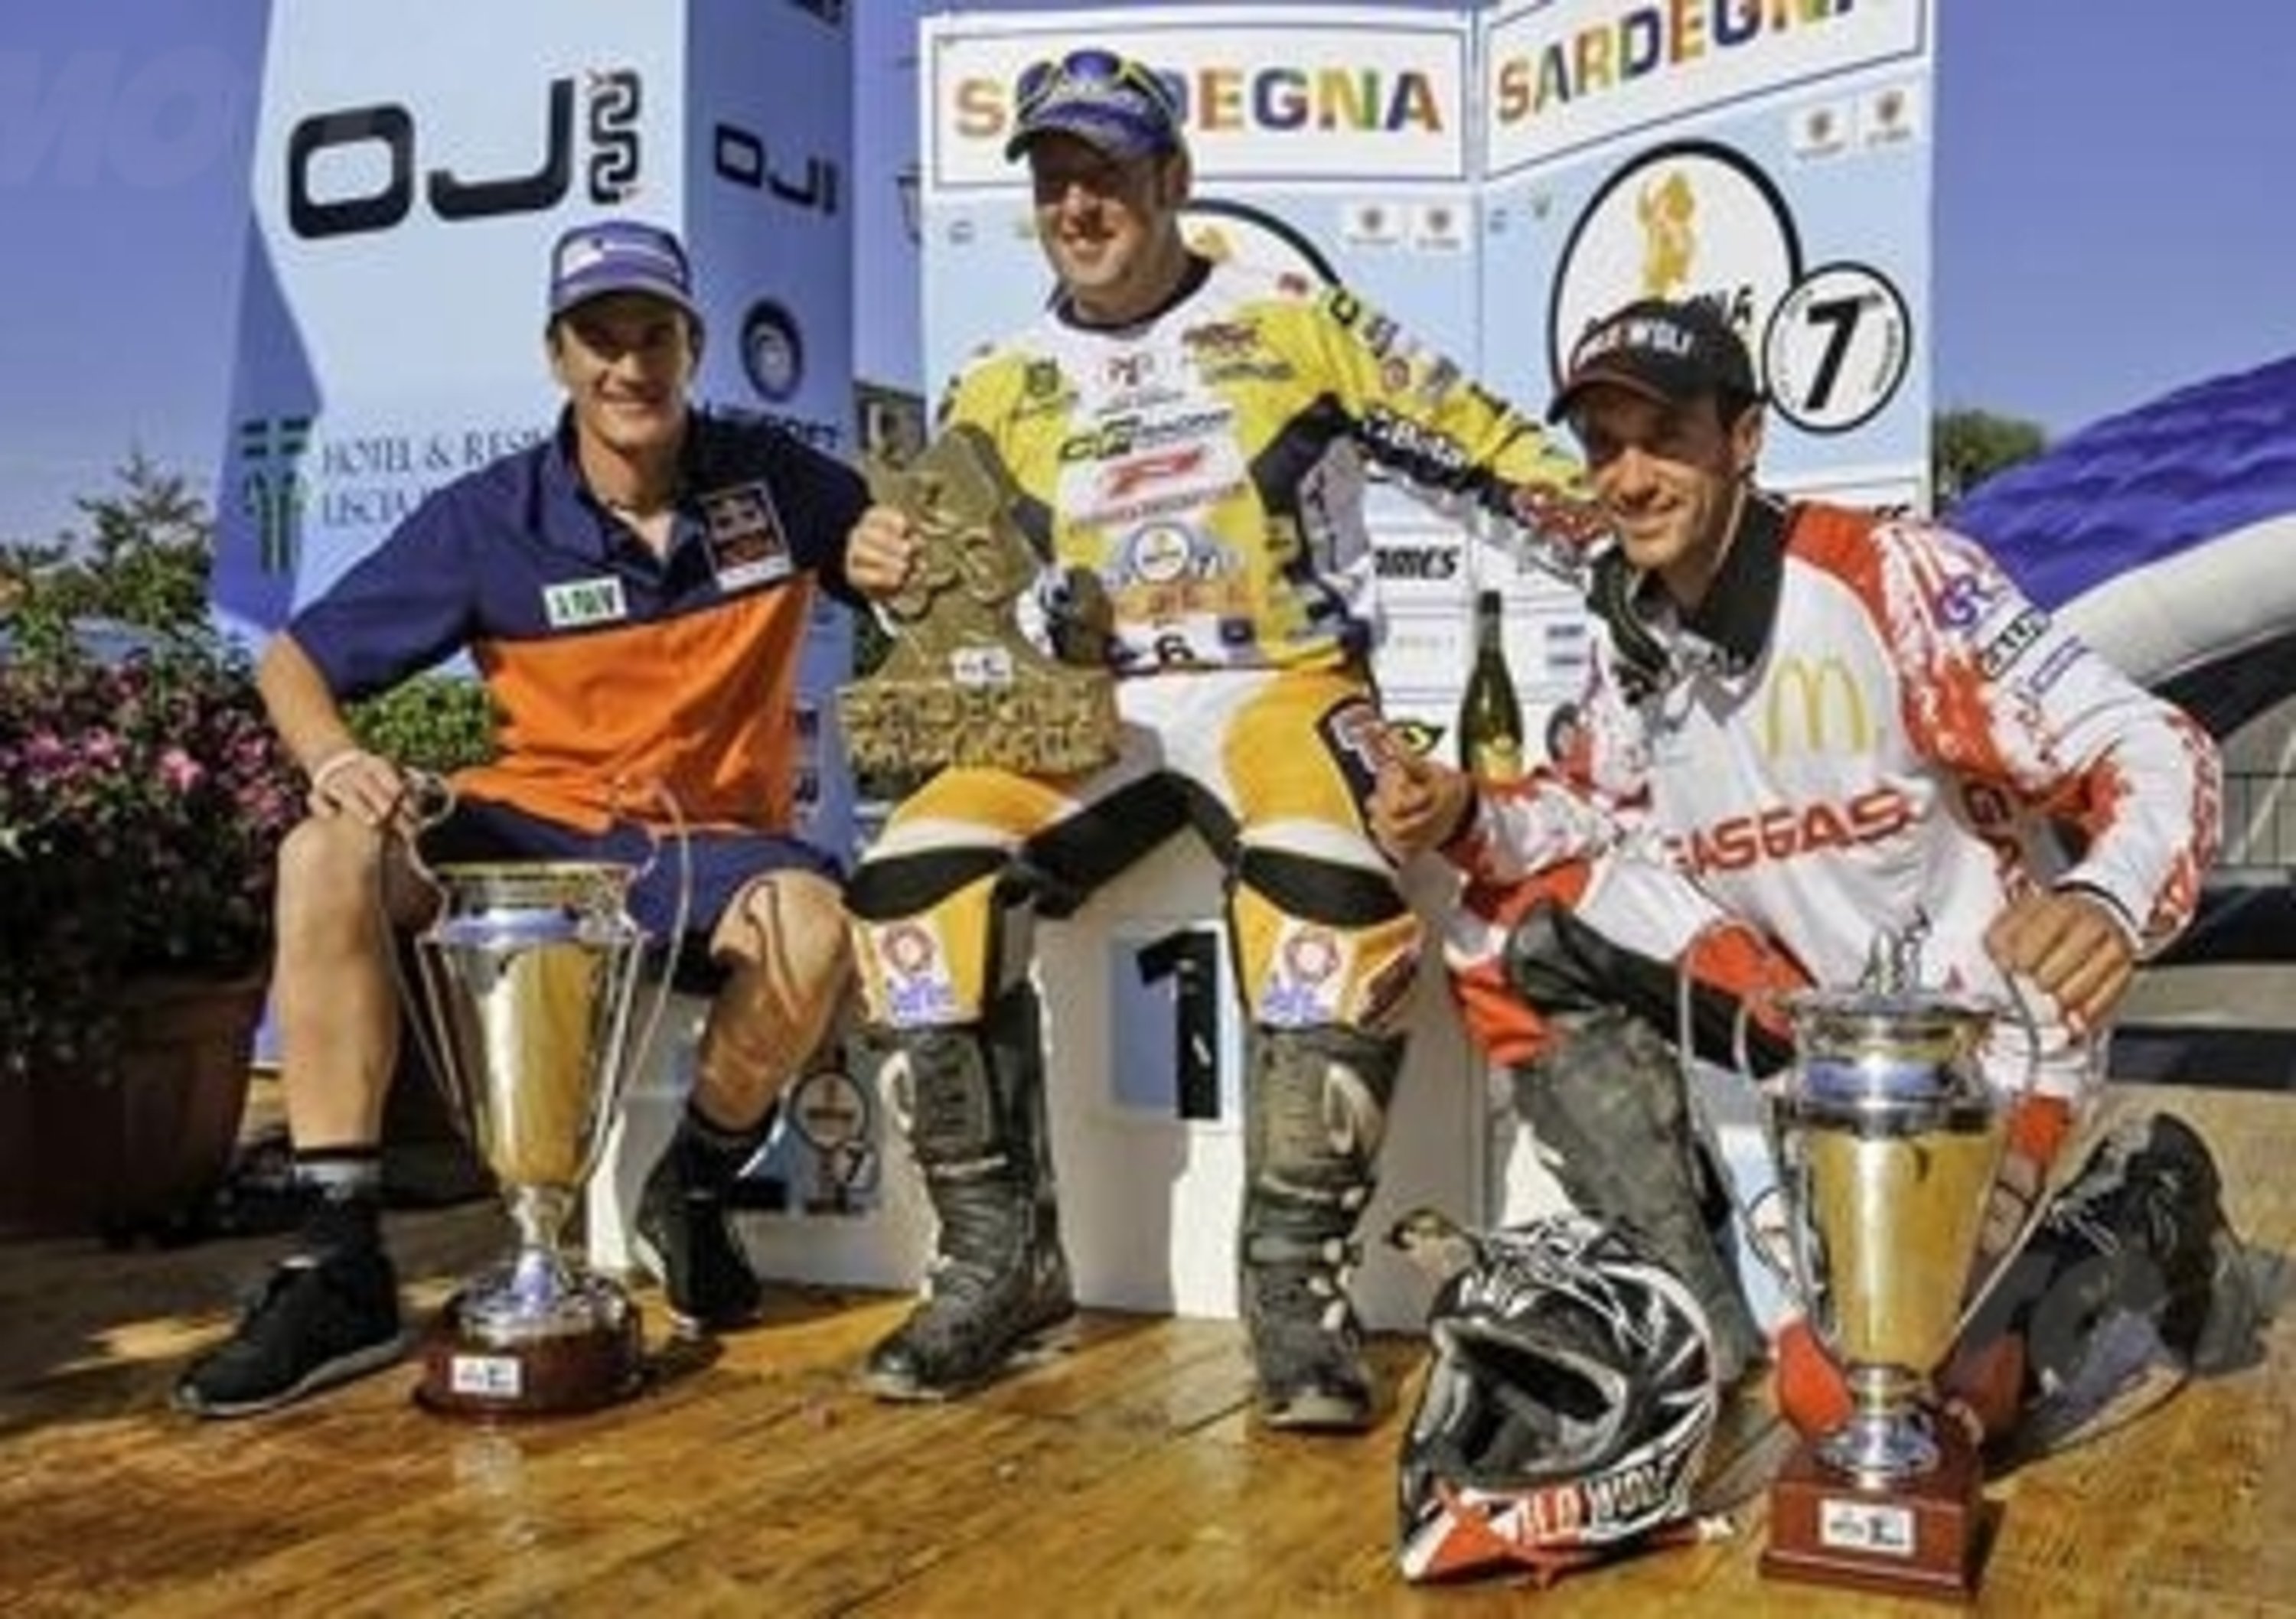 Botturi vince la settima edizione del Sardegna Rally Race